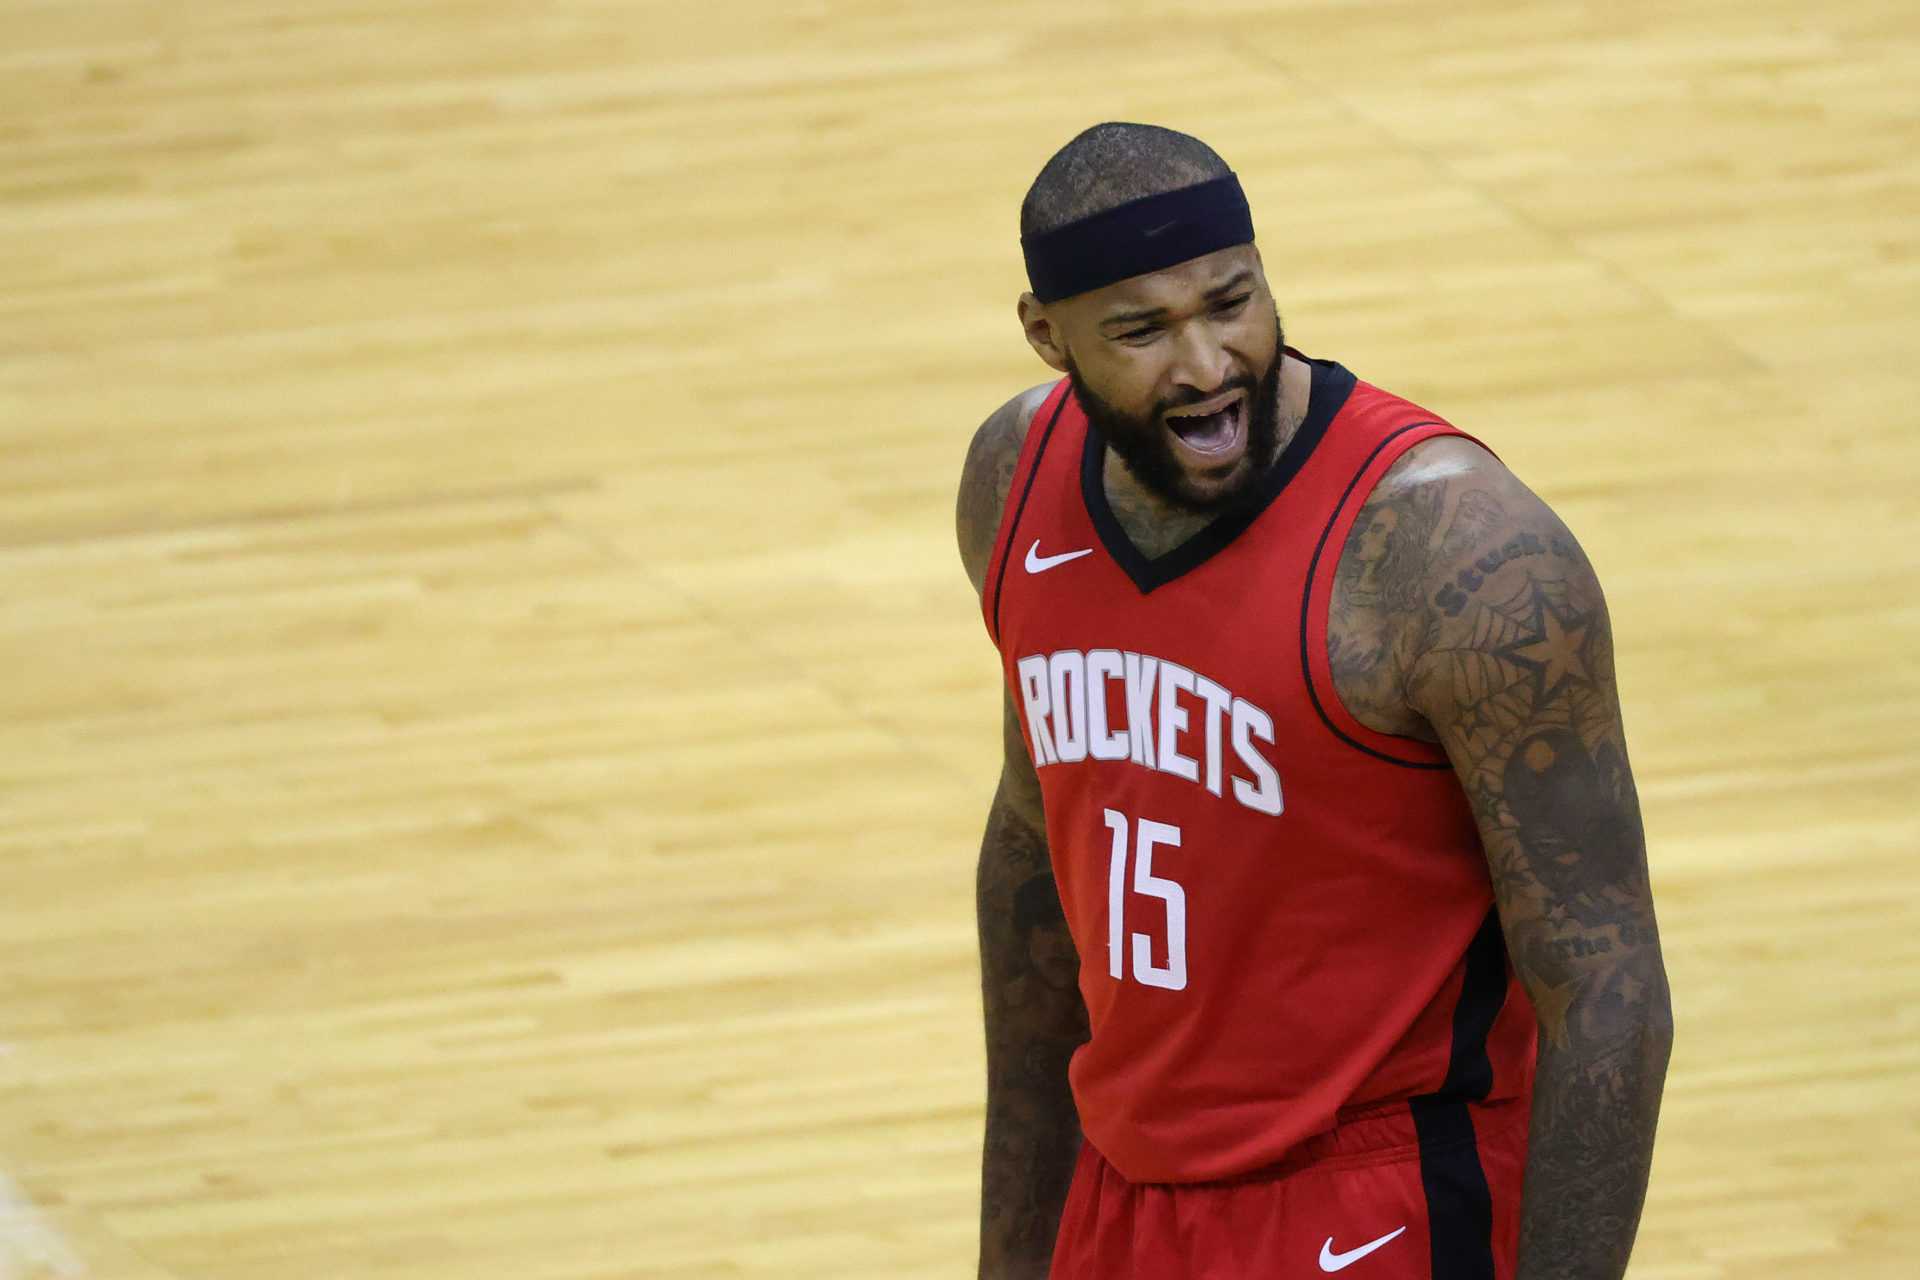 `` C'est admirable '': l'entraîneur des Rockets défend DeMarcus Cousins ​​après une faute technique contre les Lakers